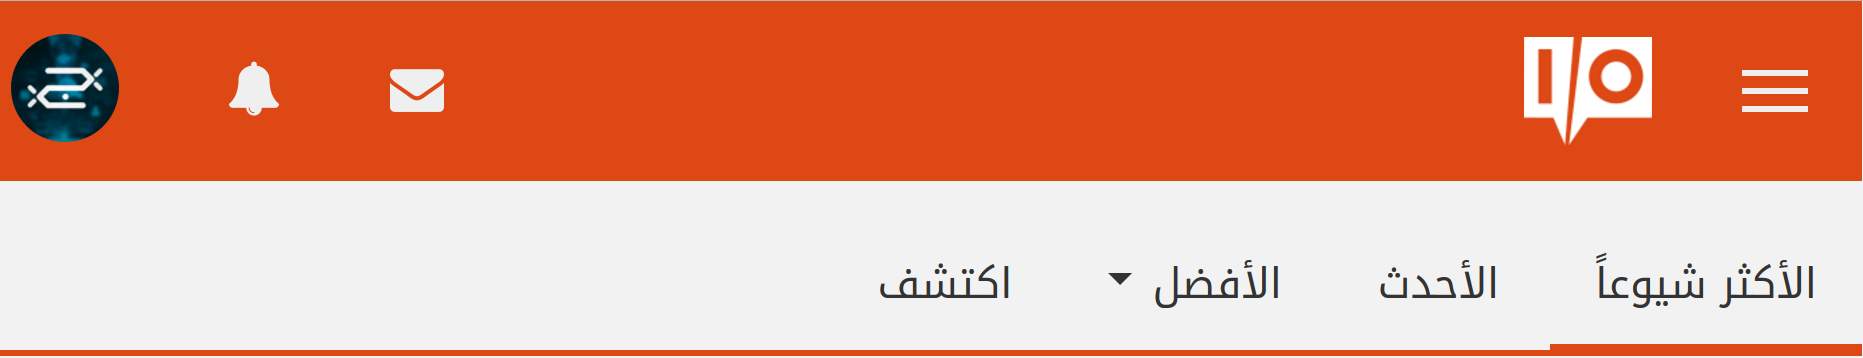 أفضل المواقع العربية ذات القيمة